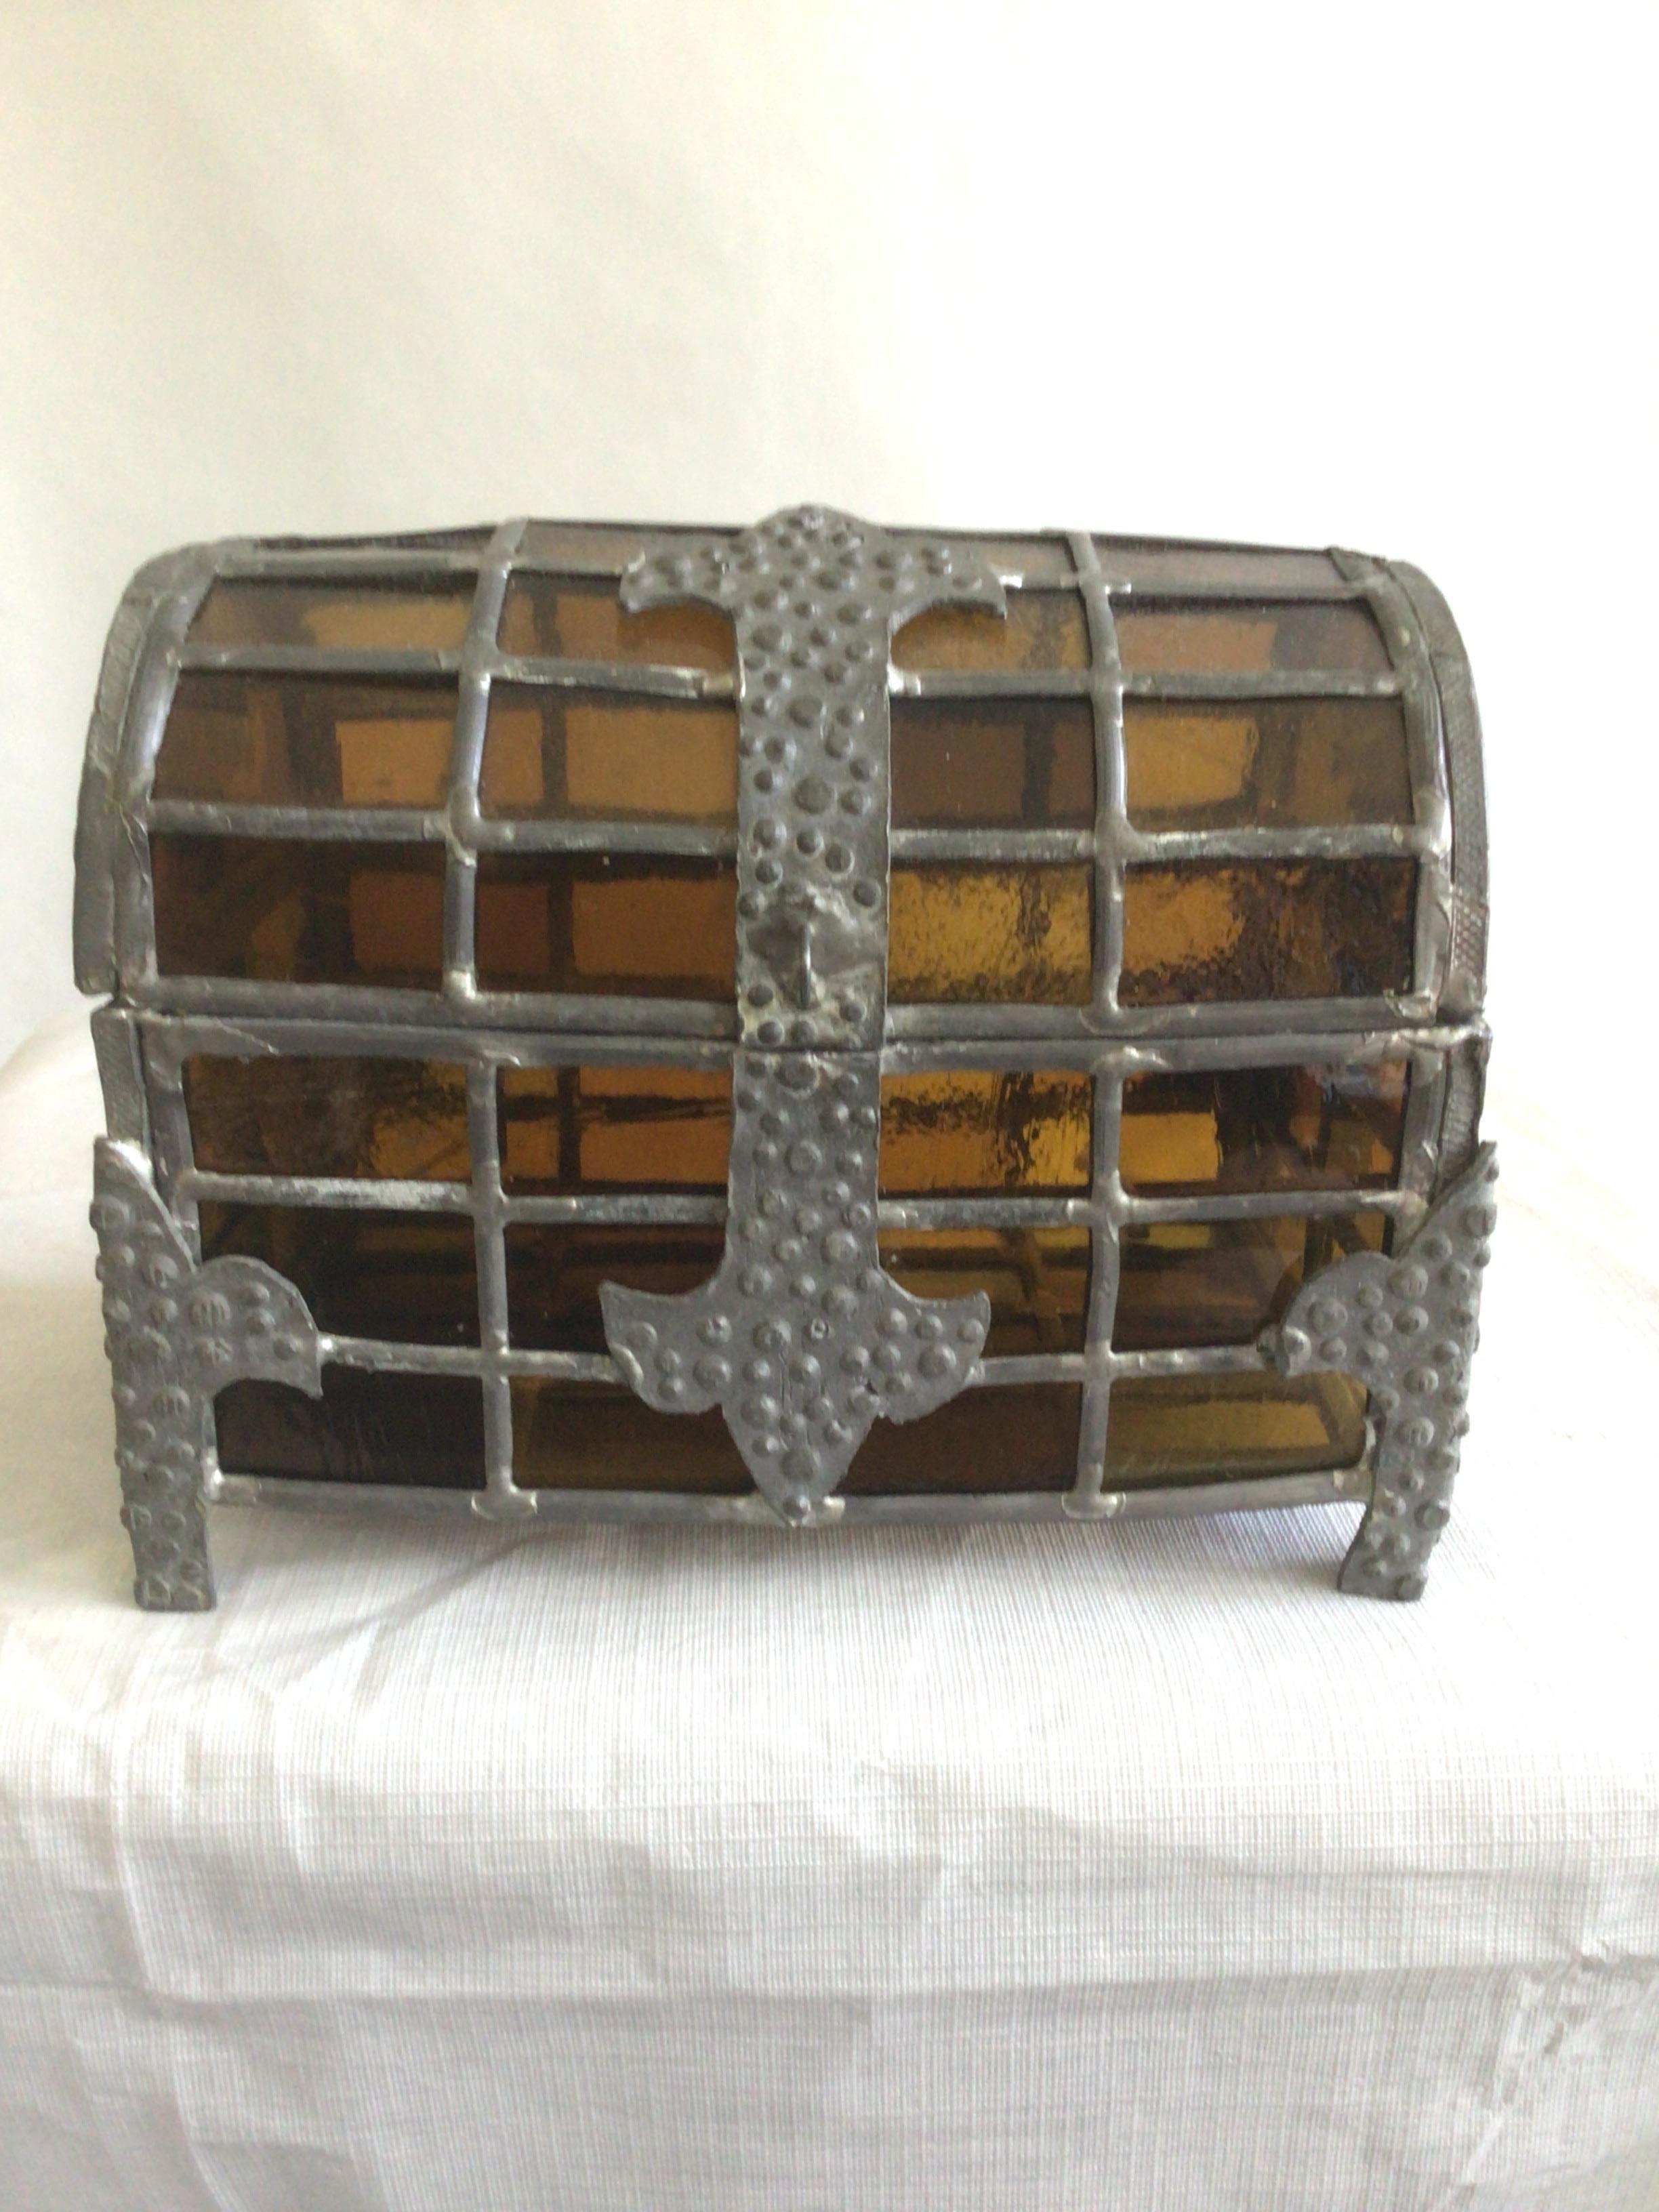 Boîte en verre ambré avec couvercle en forme de dôme datant des années 1920
Cette boîte unique en verre teinté présente un gracieux sommet en forme de dôme et est ornée d'accents métalliques sur des pieds en métal.
